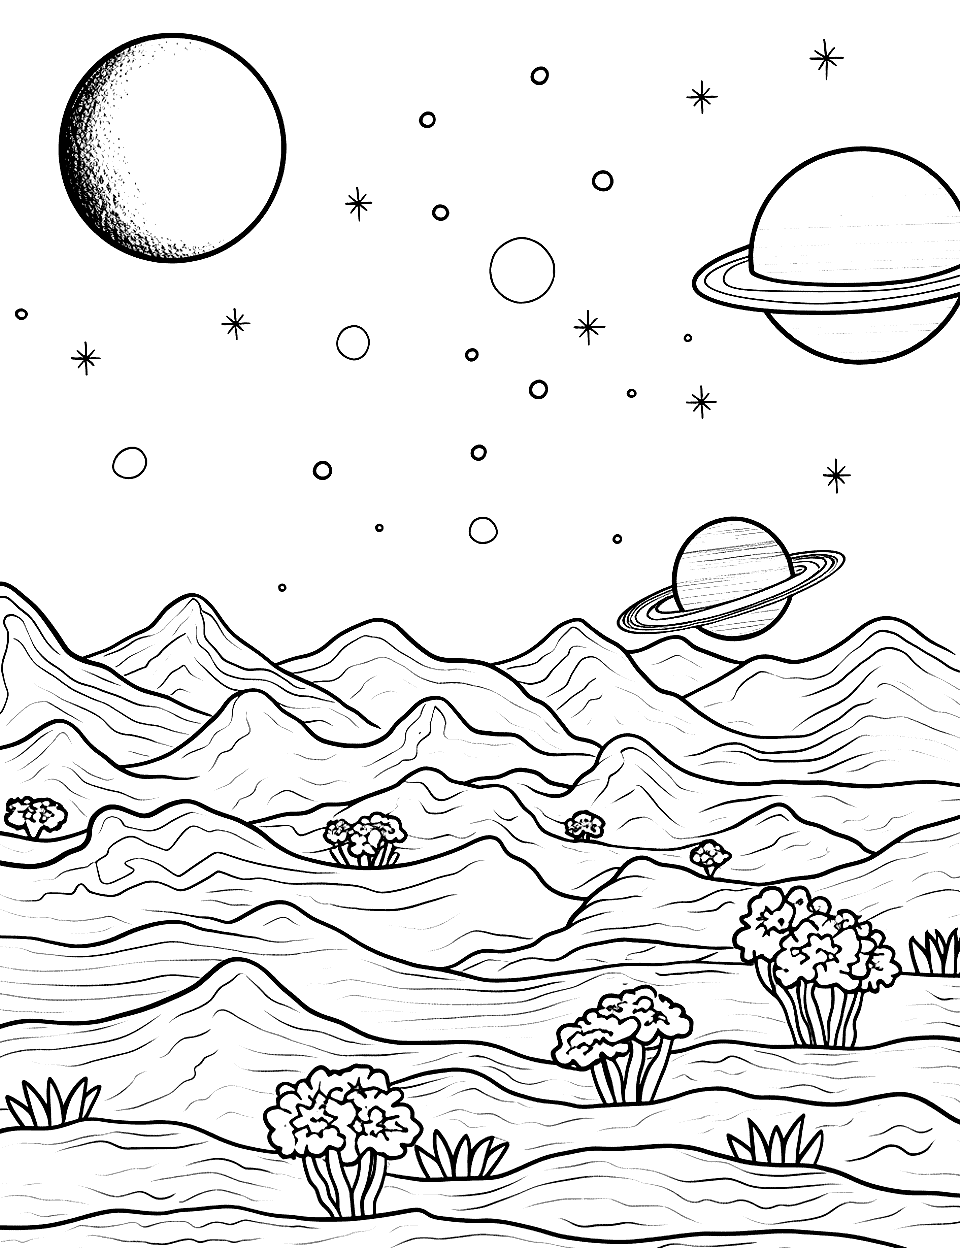 Alien Planet Landscape Solar System Coloring Page - An imaginative alien planet with unique flora and fauna.